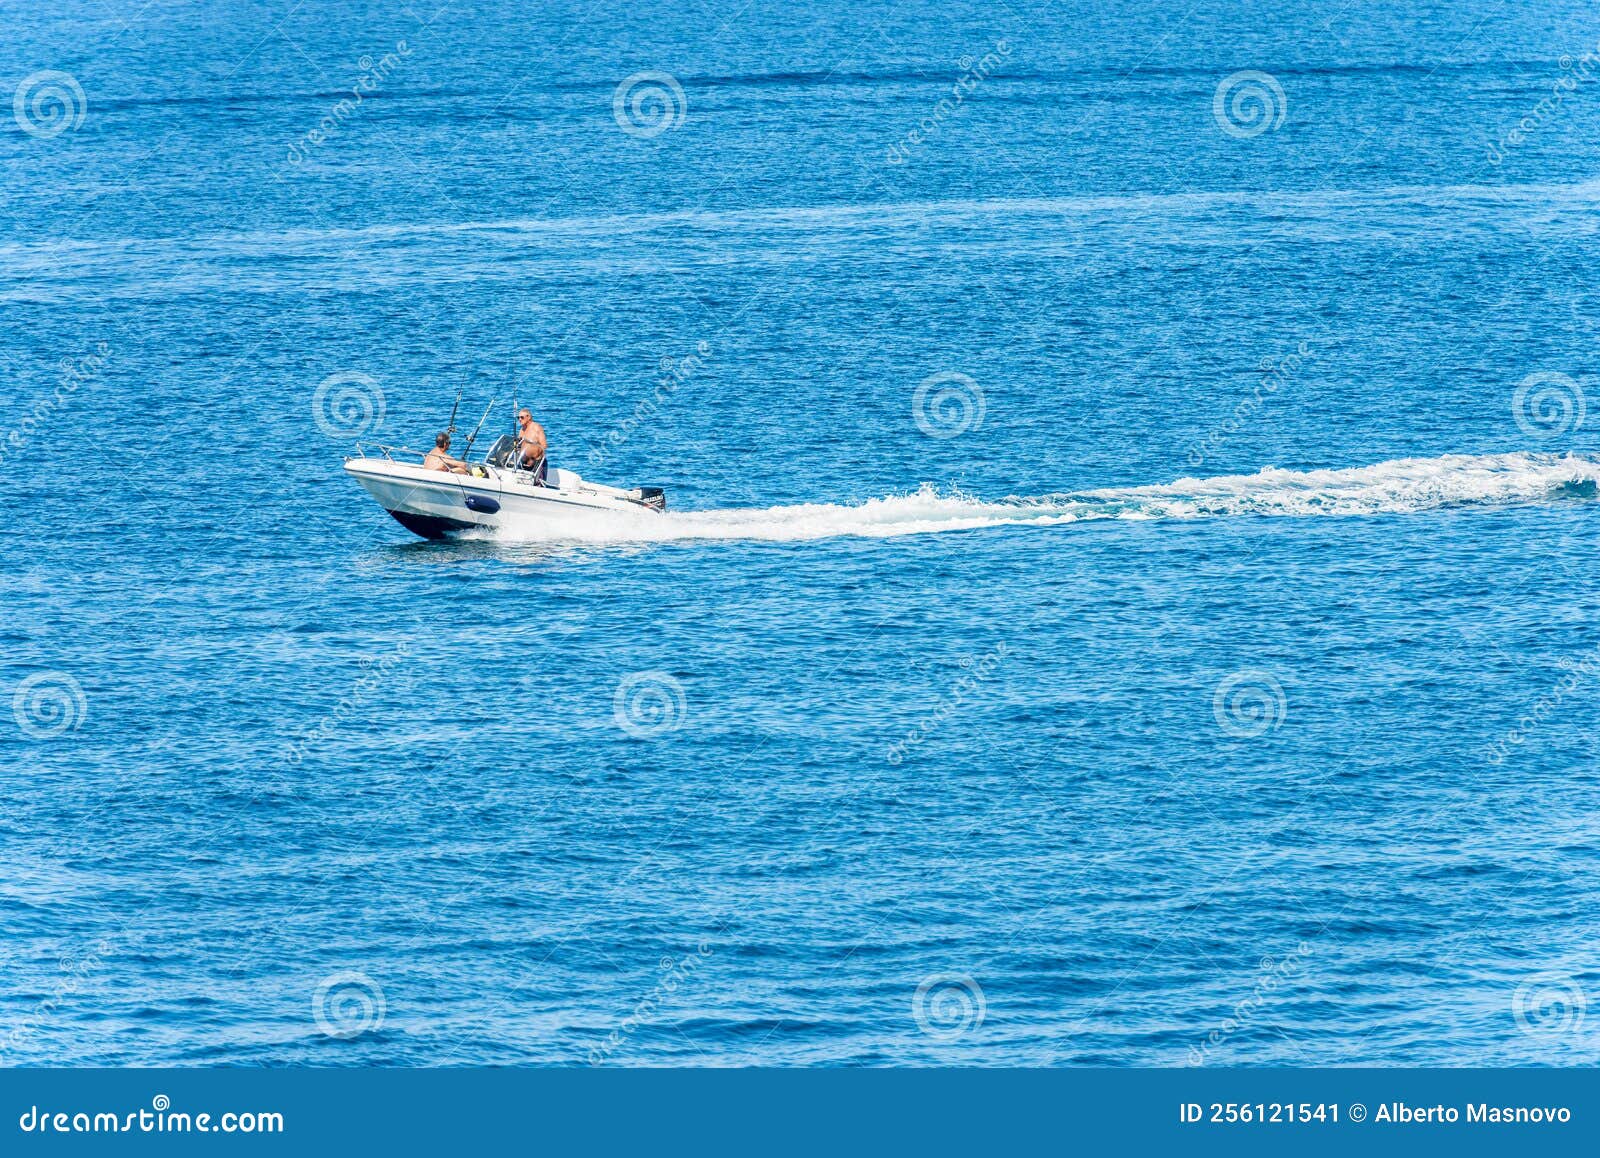 https://thumbs.dreamstime.com/z/speedboat-adults-fishermen-board-fishing-rods-liguria-italy-la-spezia-july-white-two-motion-blue-mediterranean-sea-256121541.jpg